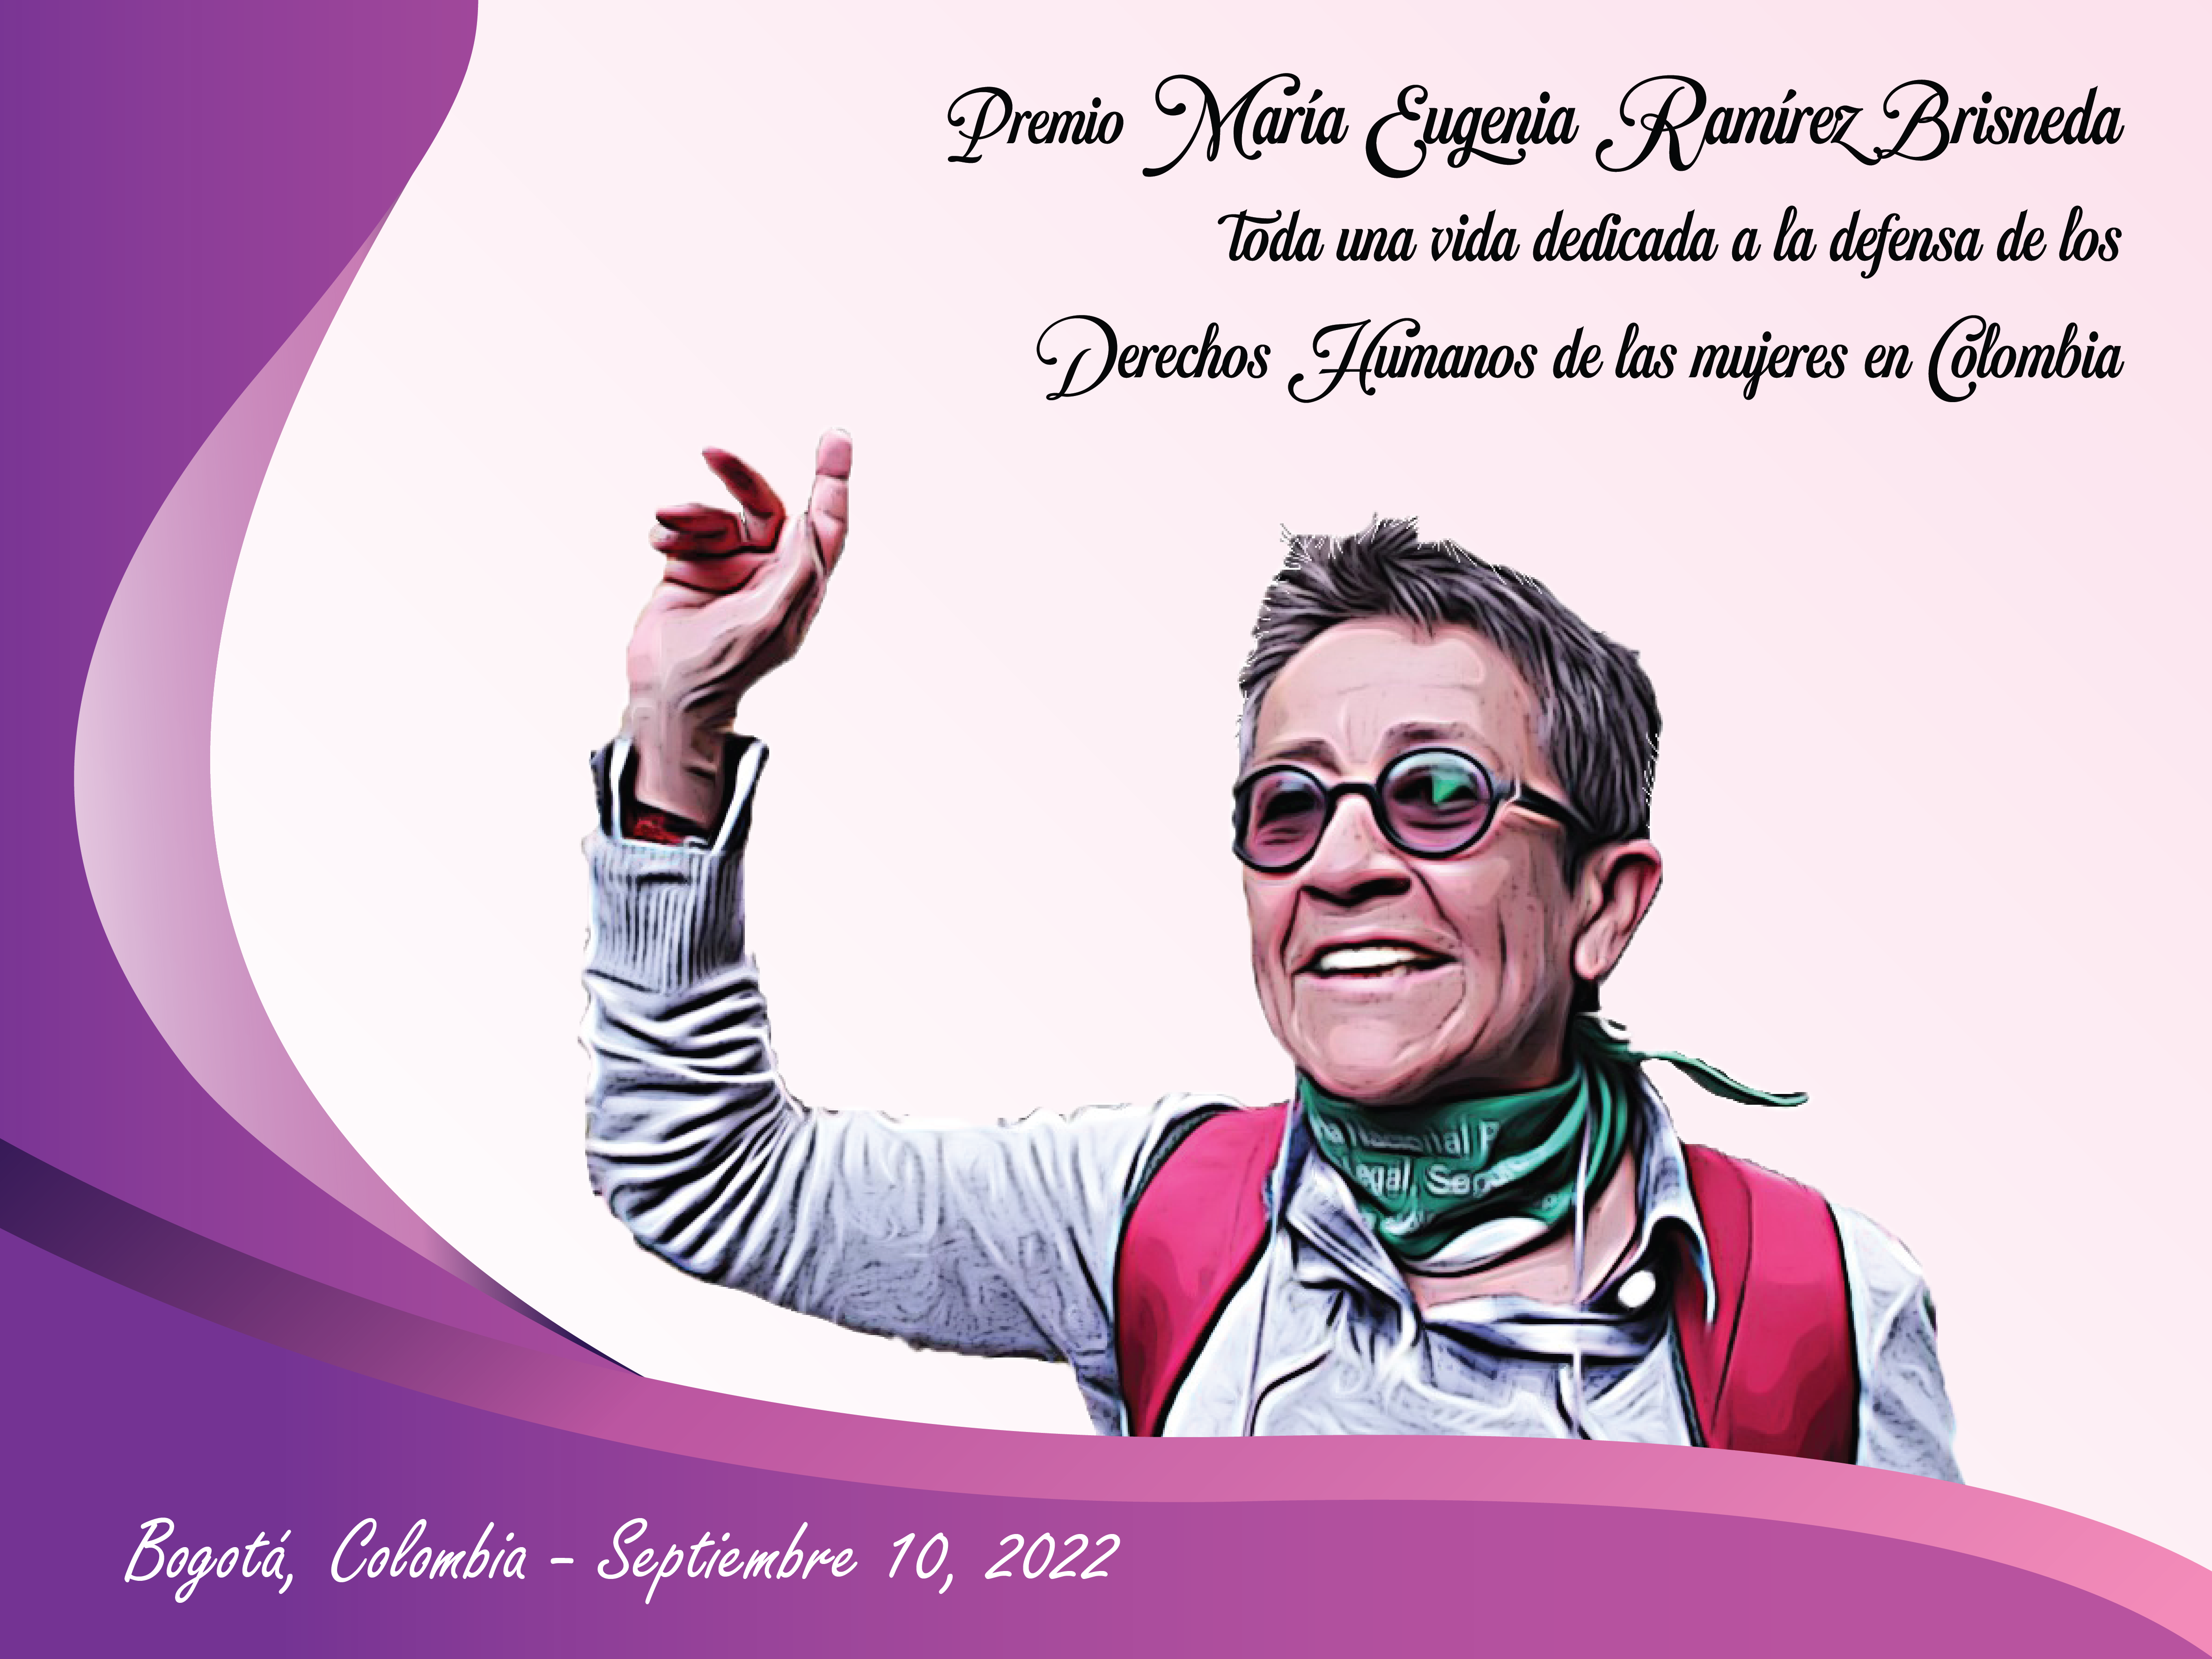 Premio ‘María Eugenia Ramírez Brisneda’ Toda una vida dedicada a la defensa de los Derechos Humanos de las mujeres en Colombia